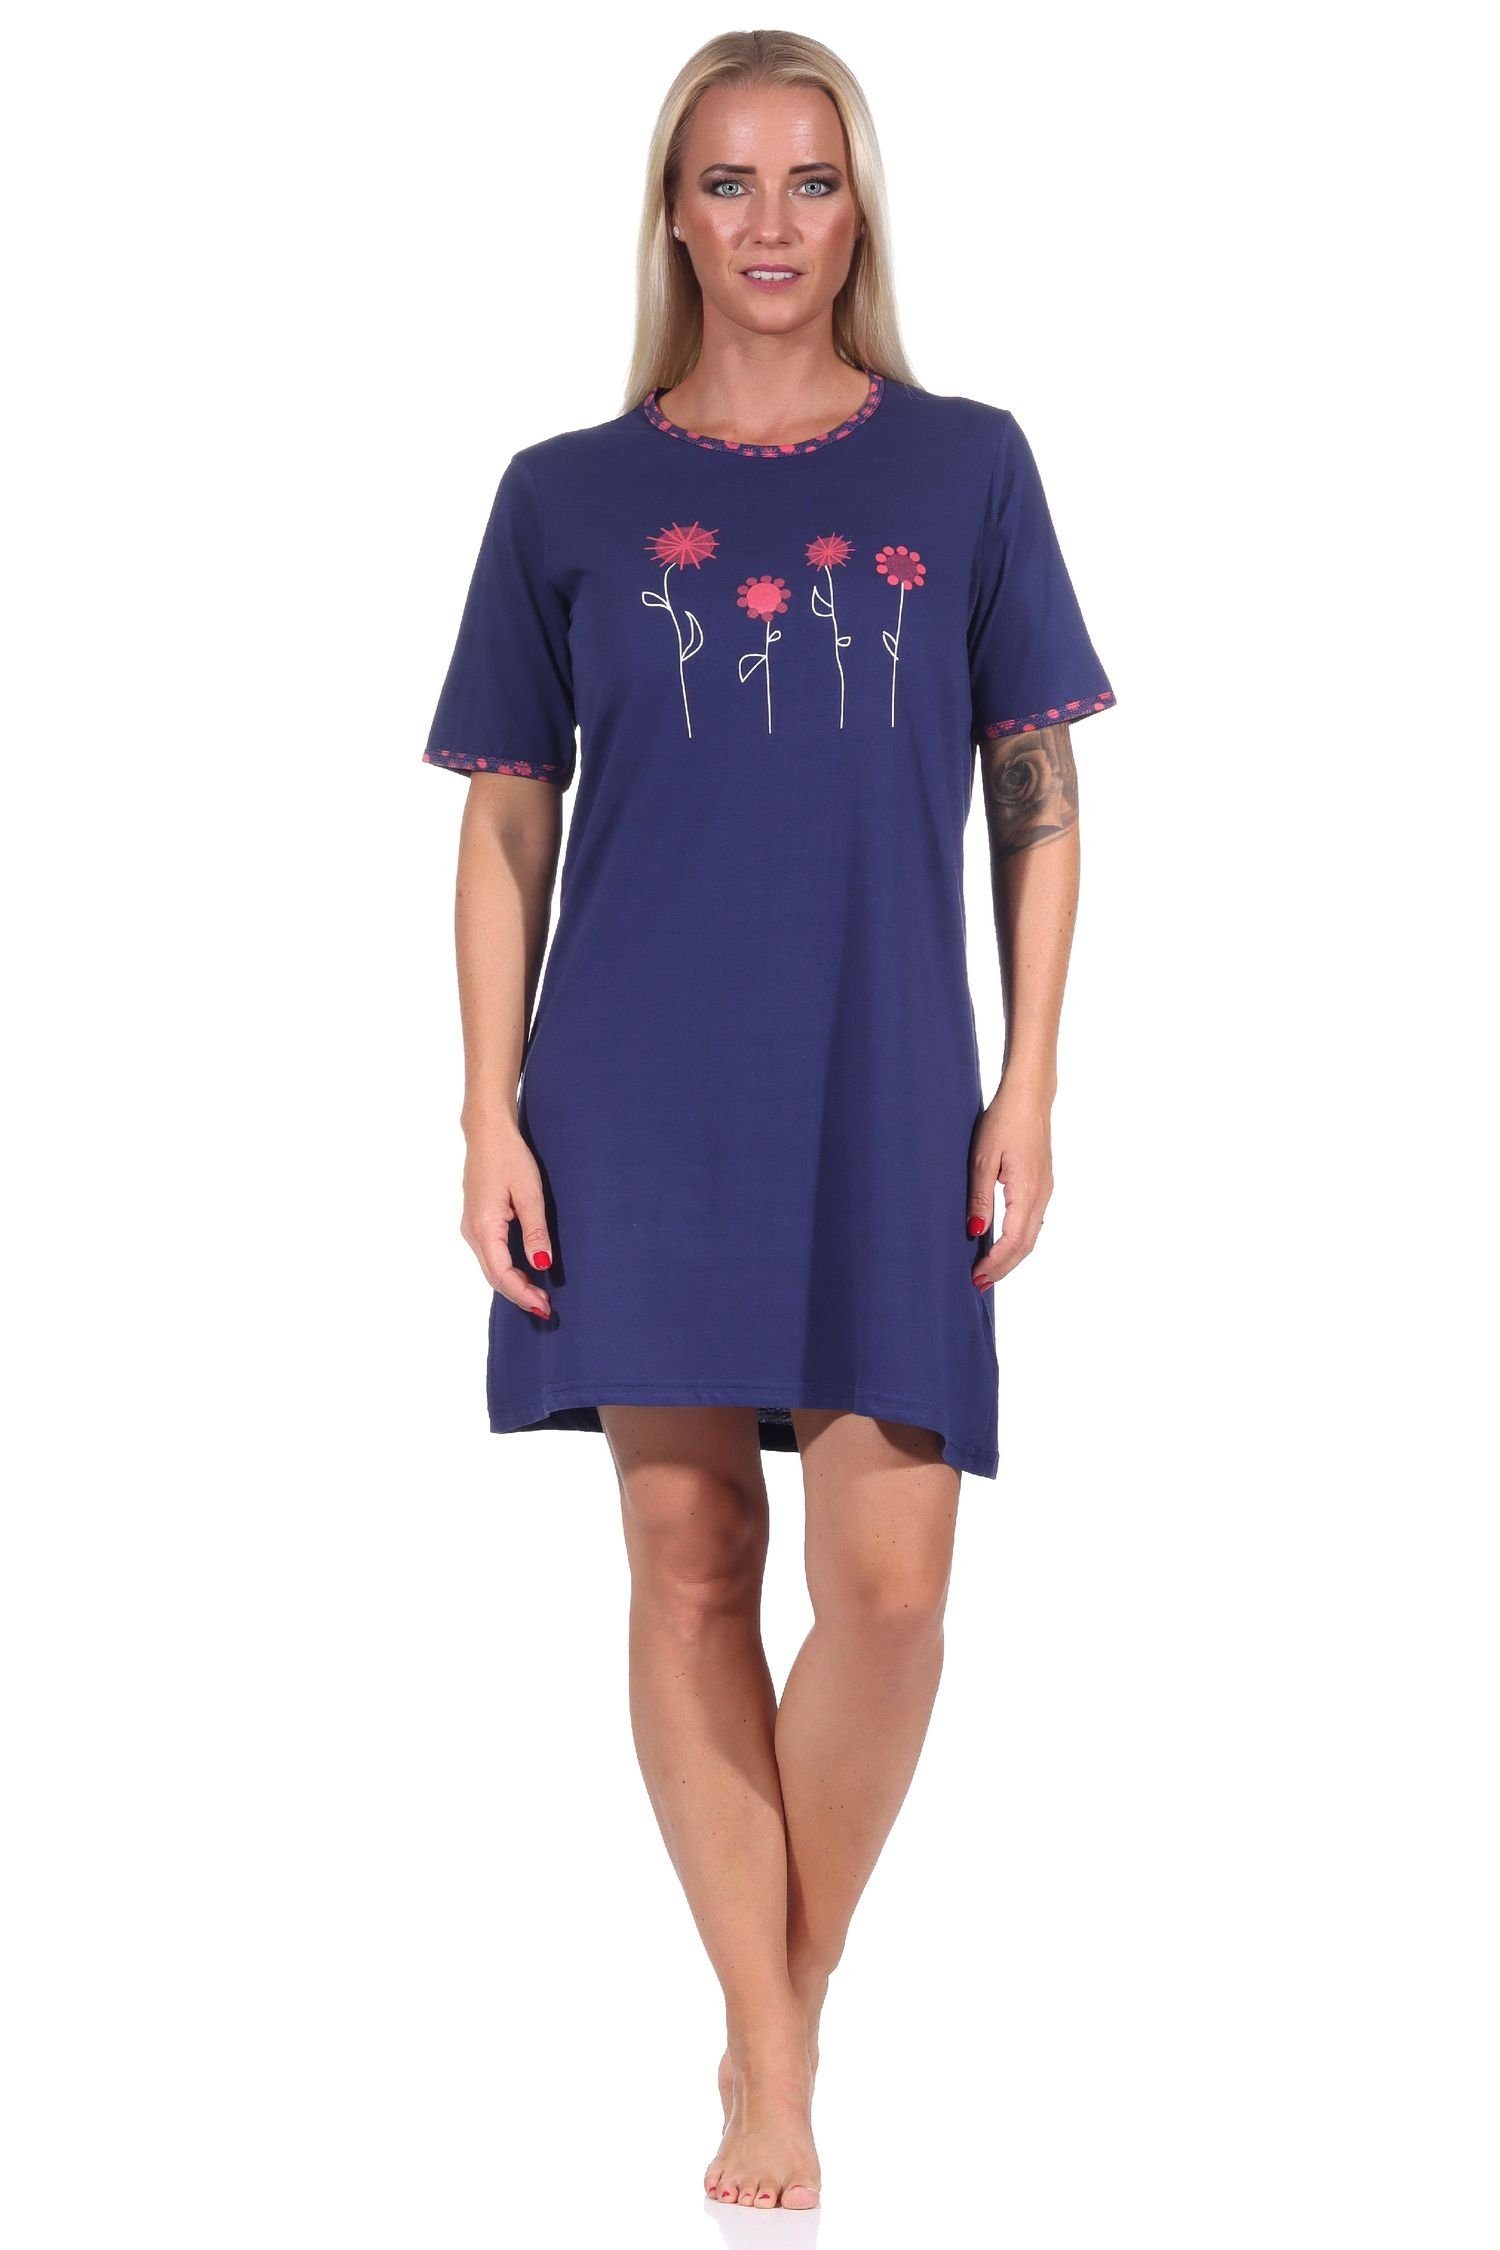 RELAX by Normann Nachthemd Edles Damen kurzarm Nachthemd mit floralen Frontprint - 122 10 602 navy | Nachthemden